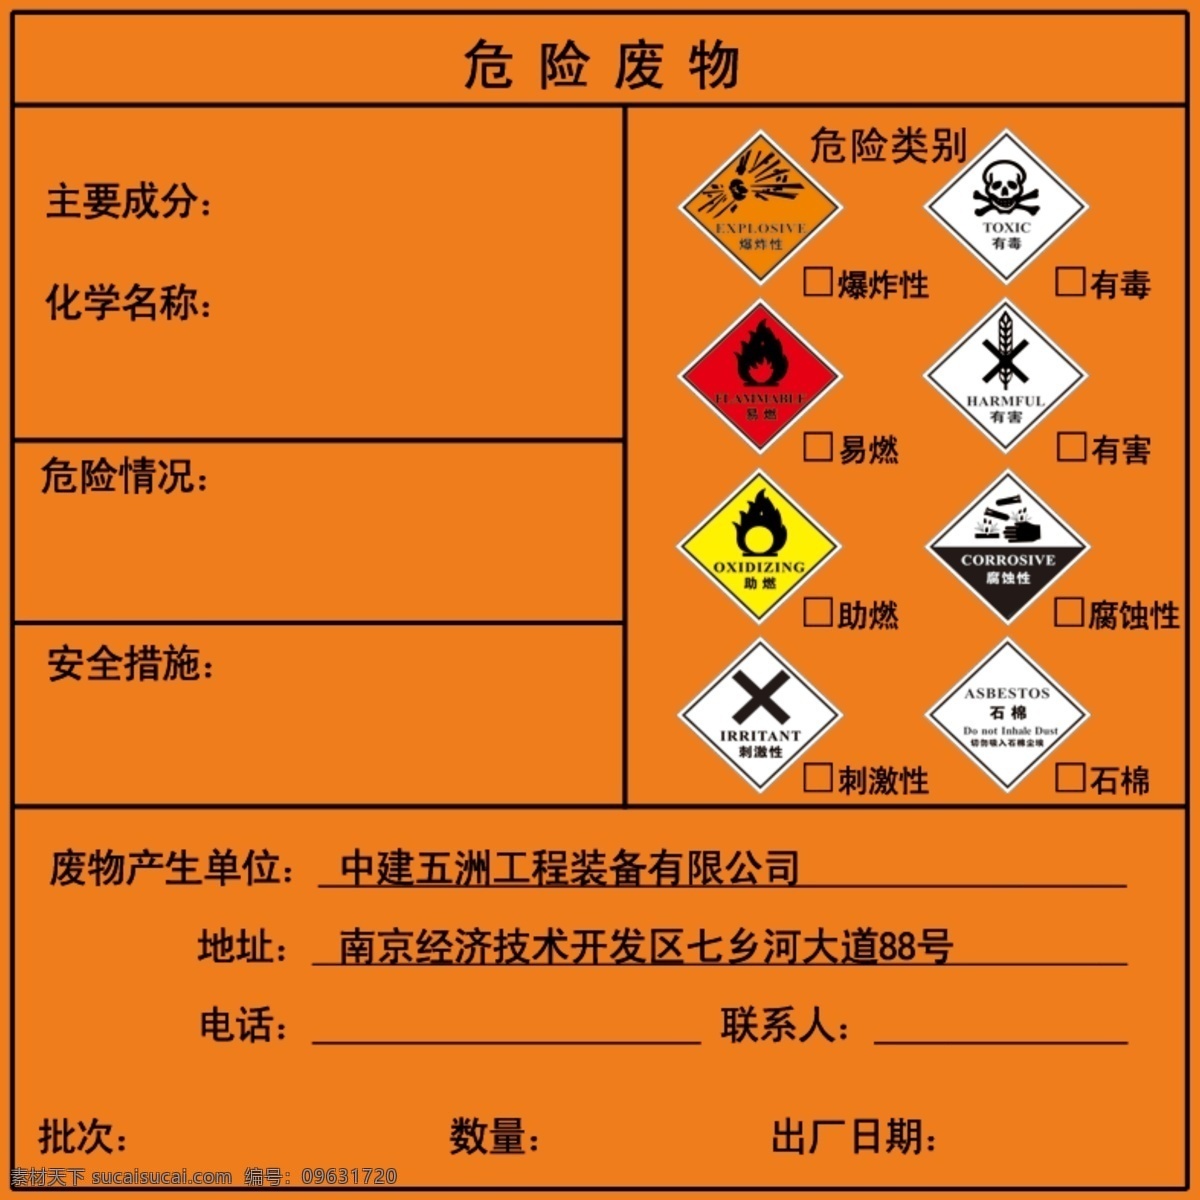 危险 废物 包装 识别 标签 工厂 危化品 危险品 钢结构厂 环保 废料堆场 警示牌 分层